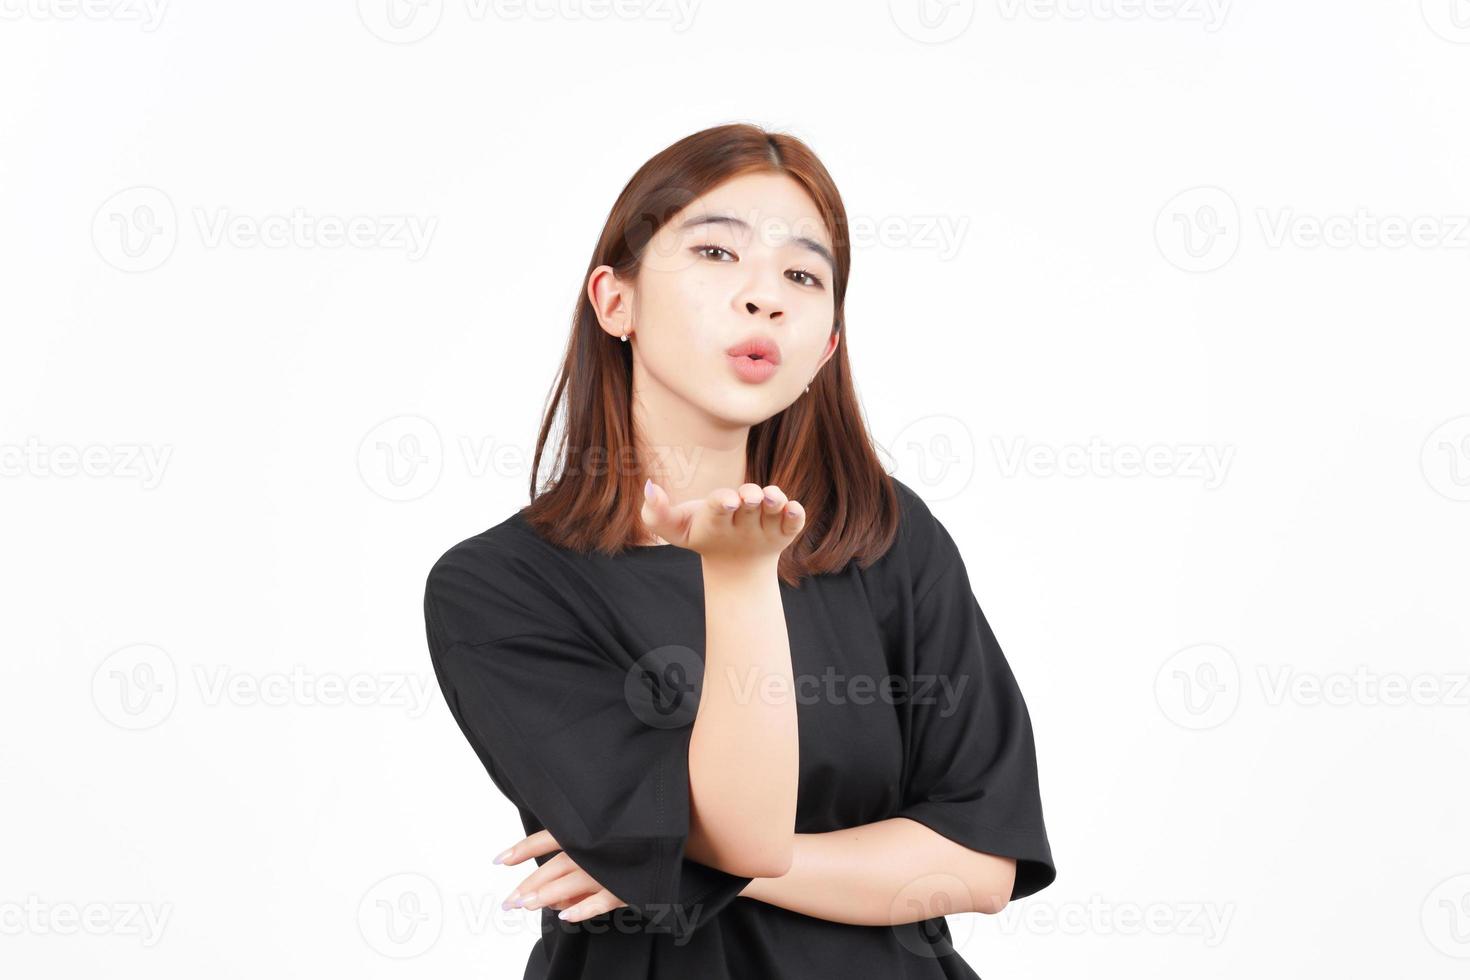 mandando beijo de linda mulher asiática isolada no fundo branco foto